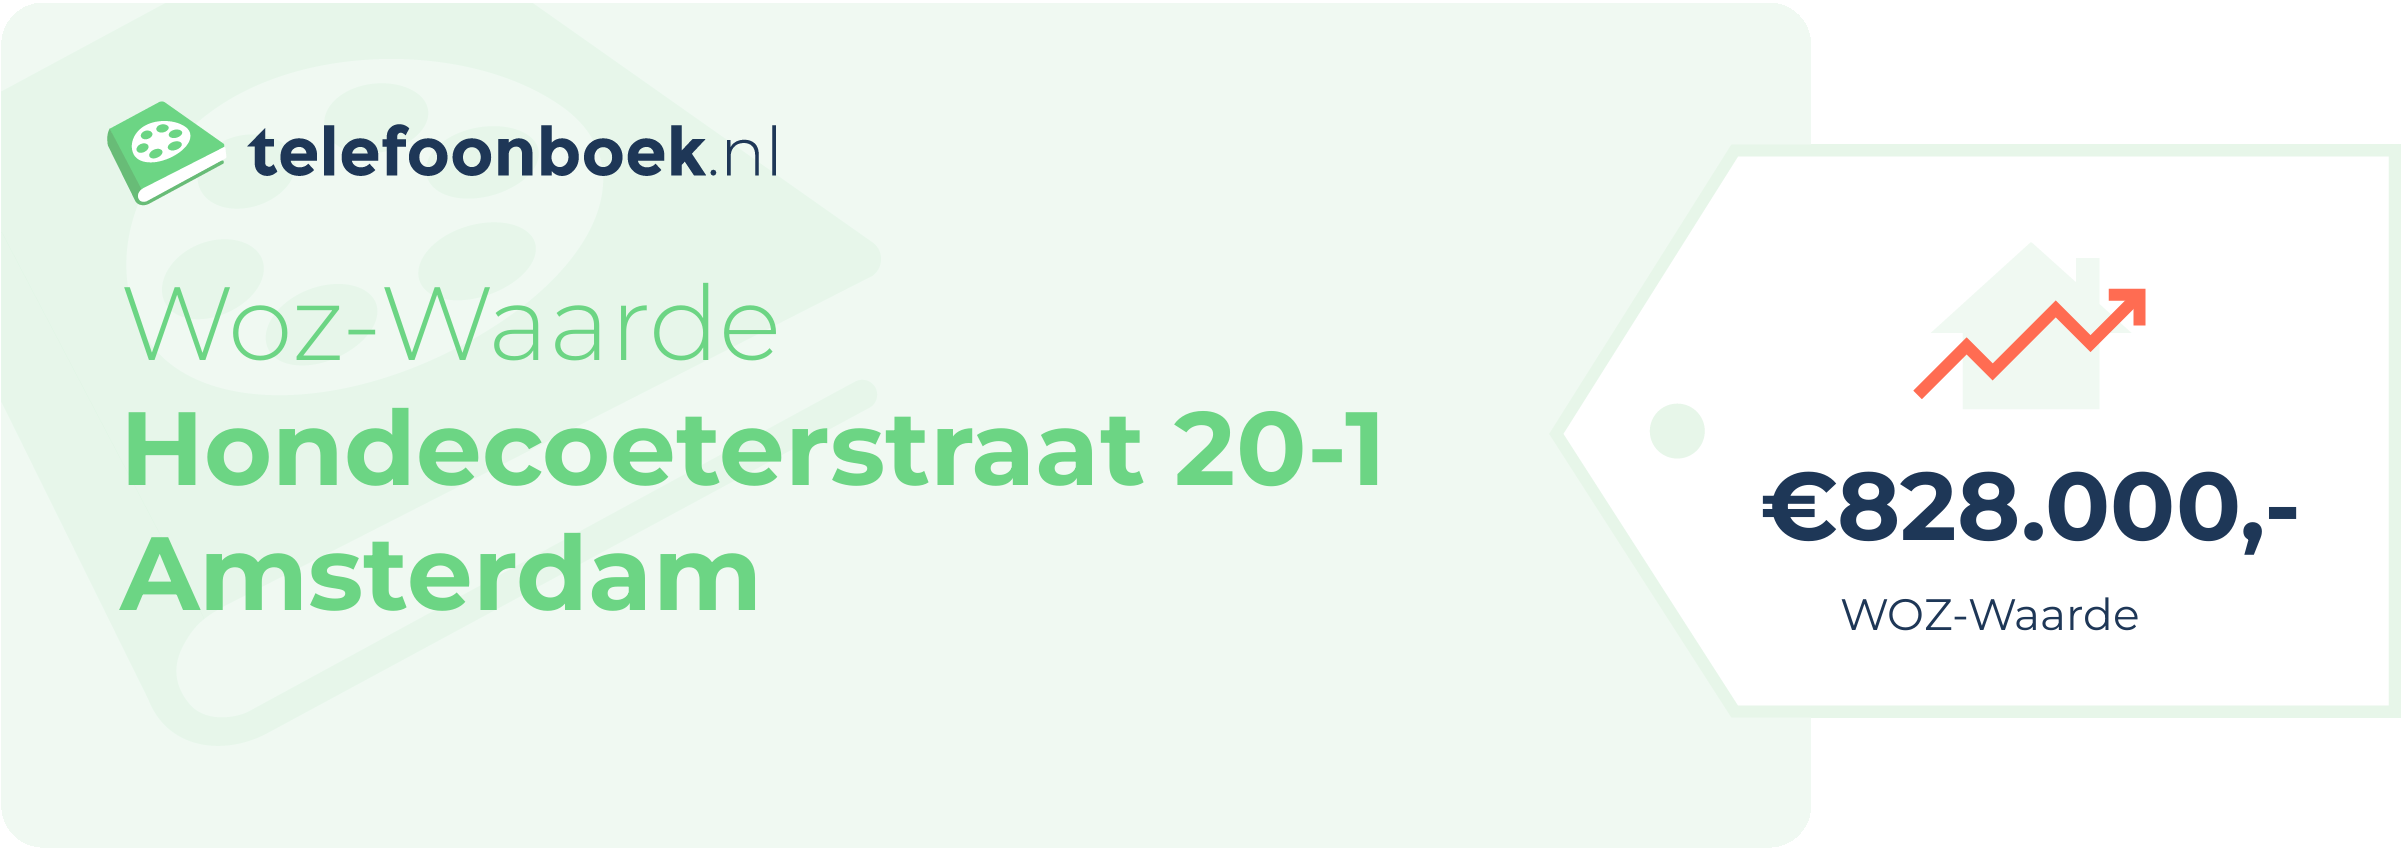 WOZ-waarde Hondecoeterstraat 20-1 Amsterdam